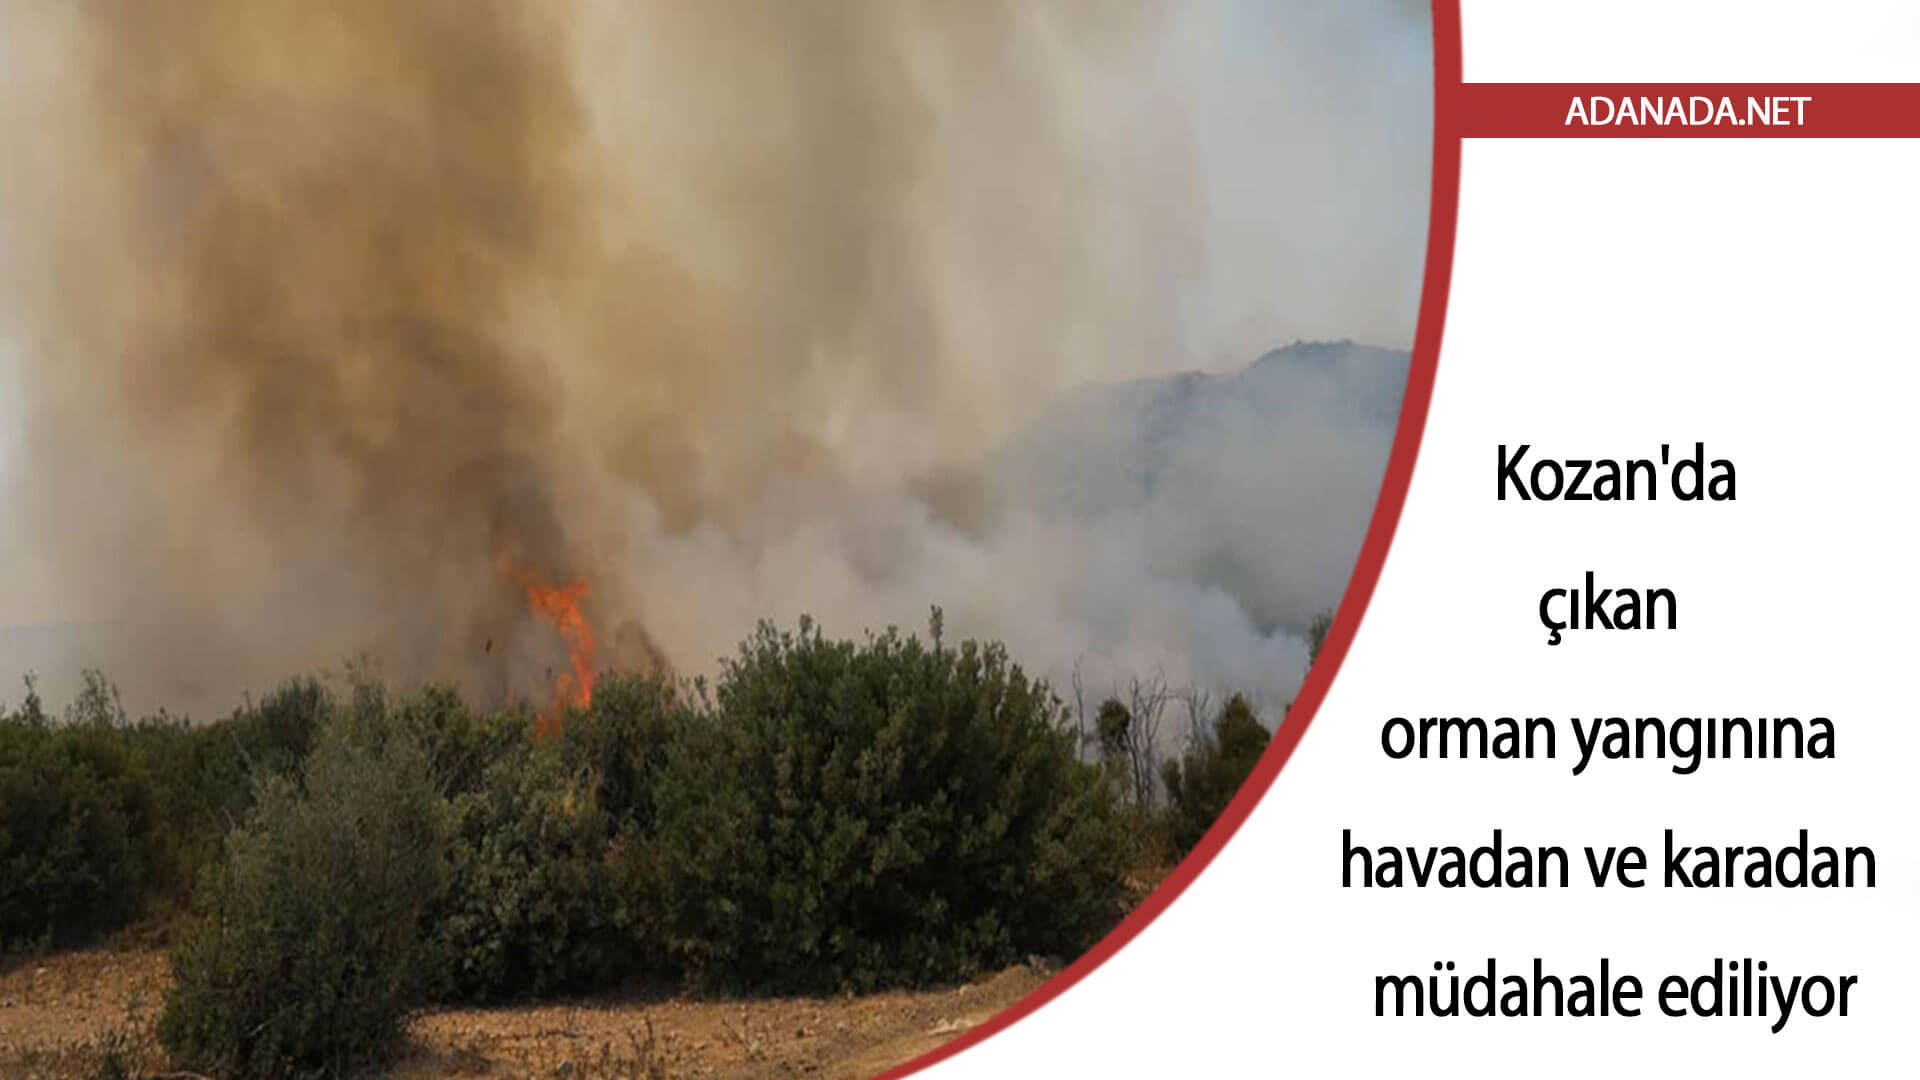 Adana Kozan’da çıkan orman yangınına havadan ve karadan müdahale ediliyor